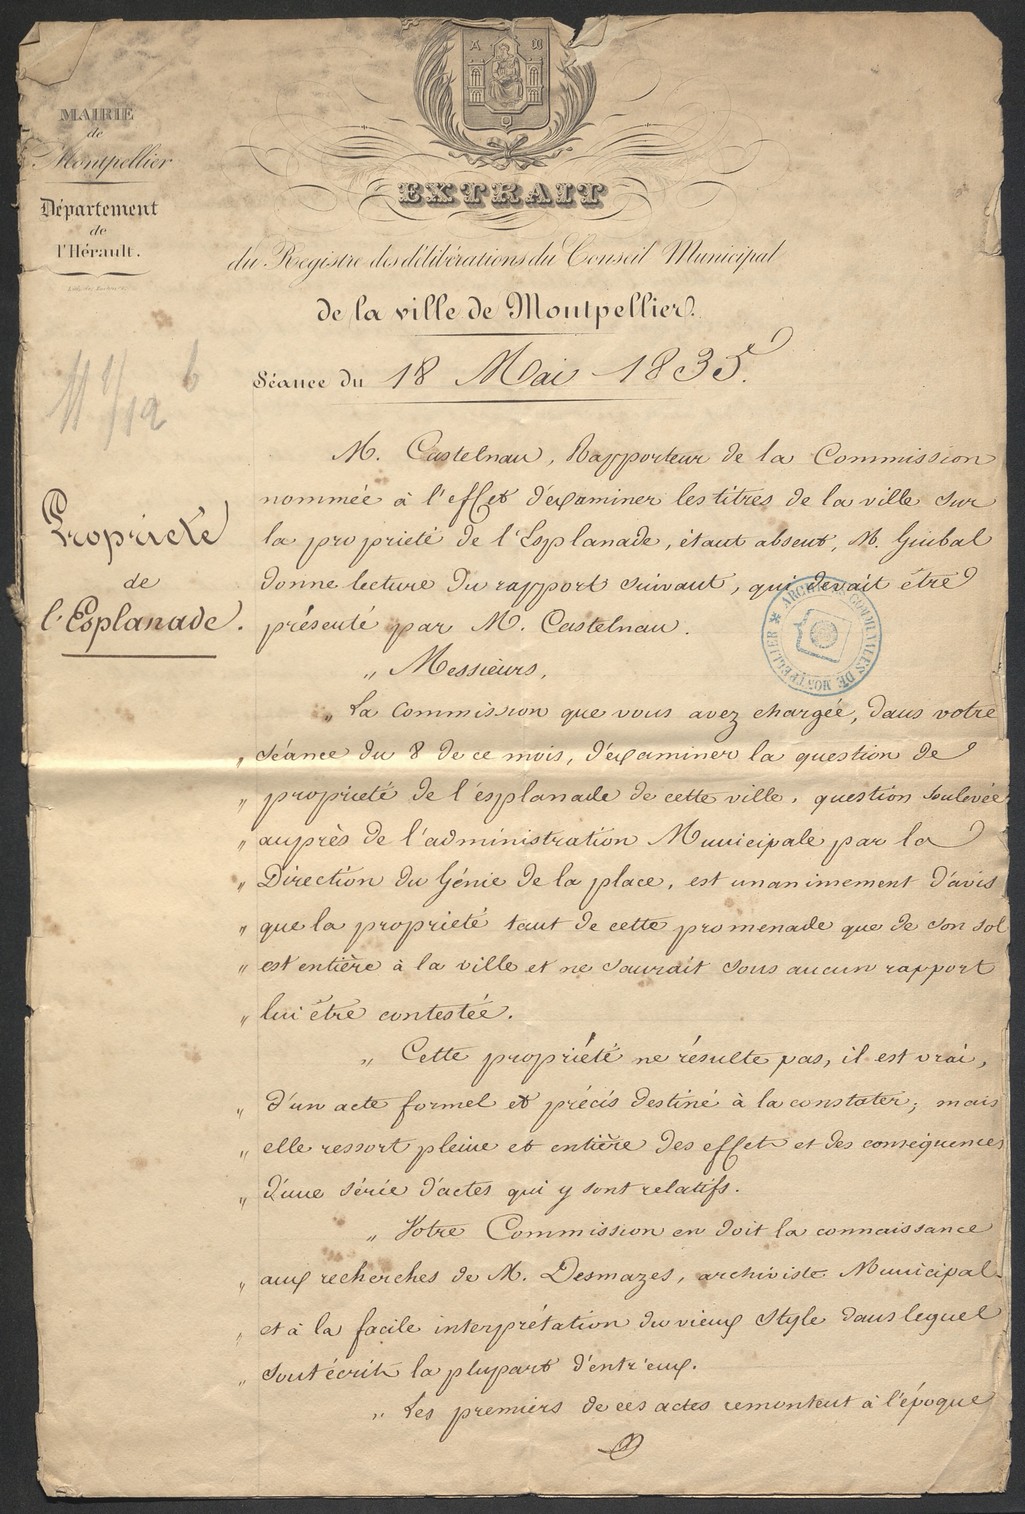 Délibération propriété à la Ville, 18 mai 1835. AMM, série O